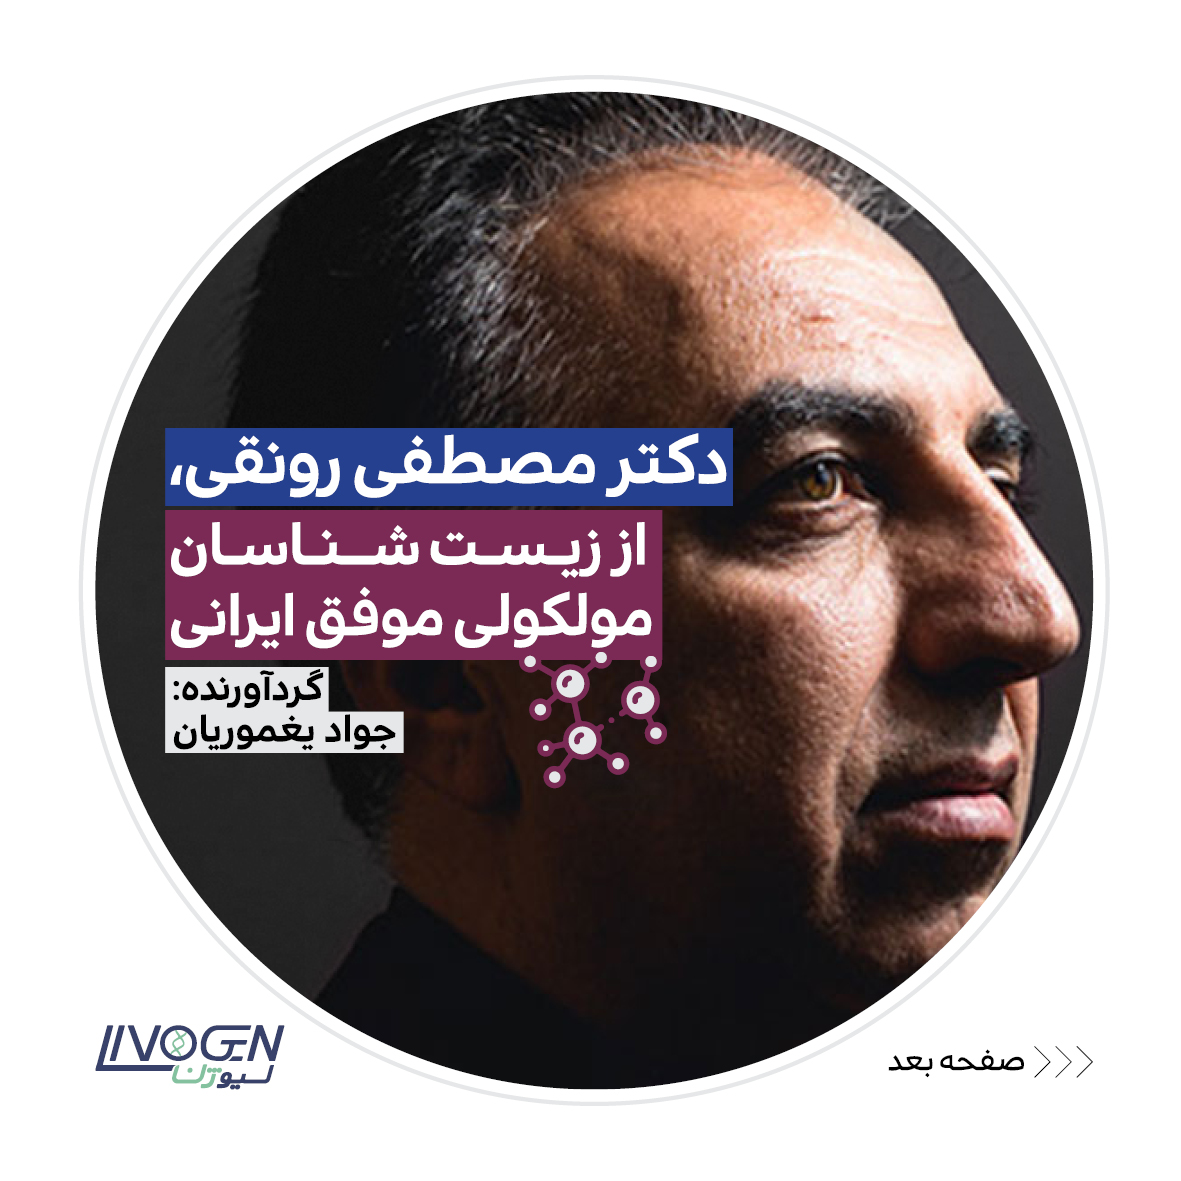 دکتر مصطفی رونقی از زیست شناسان موفق ایرانی